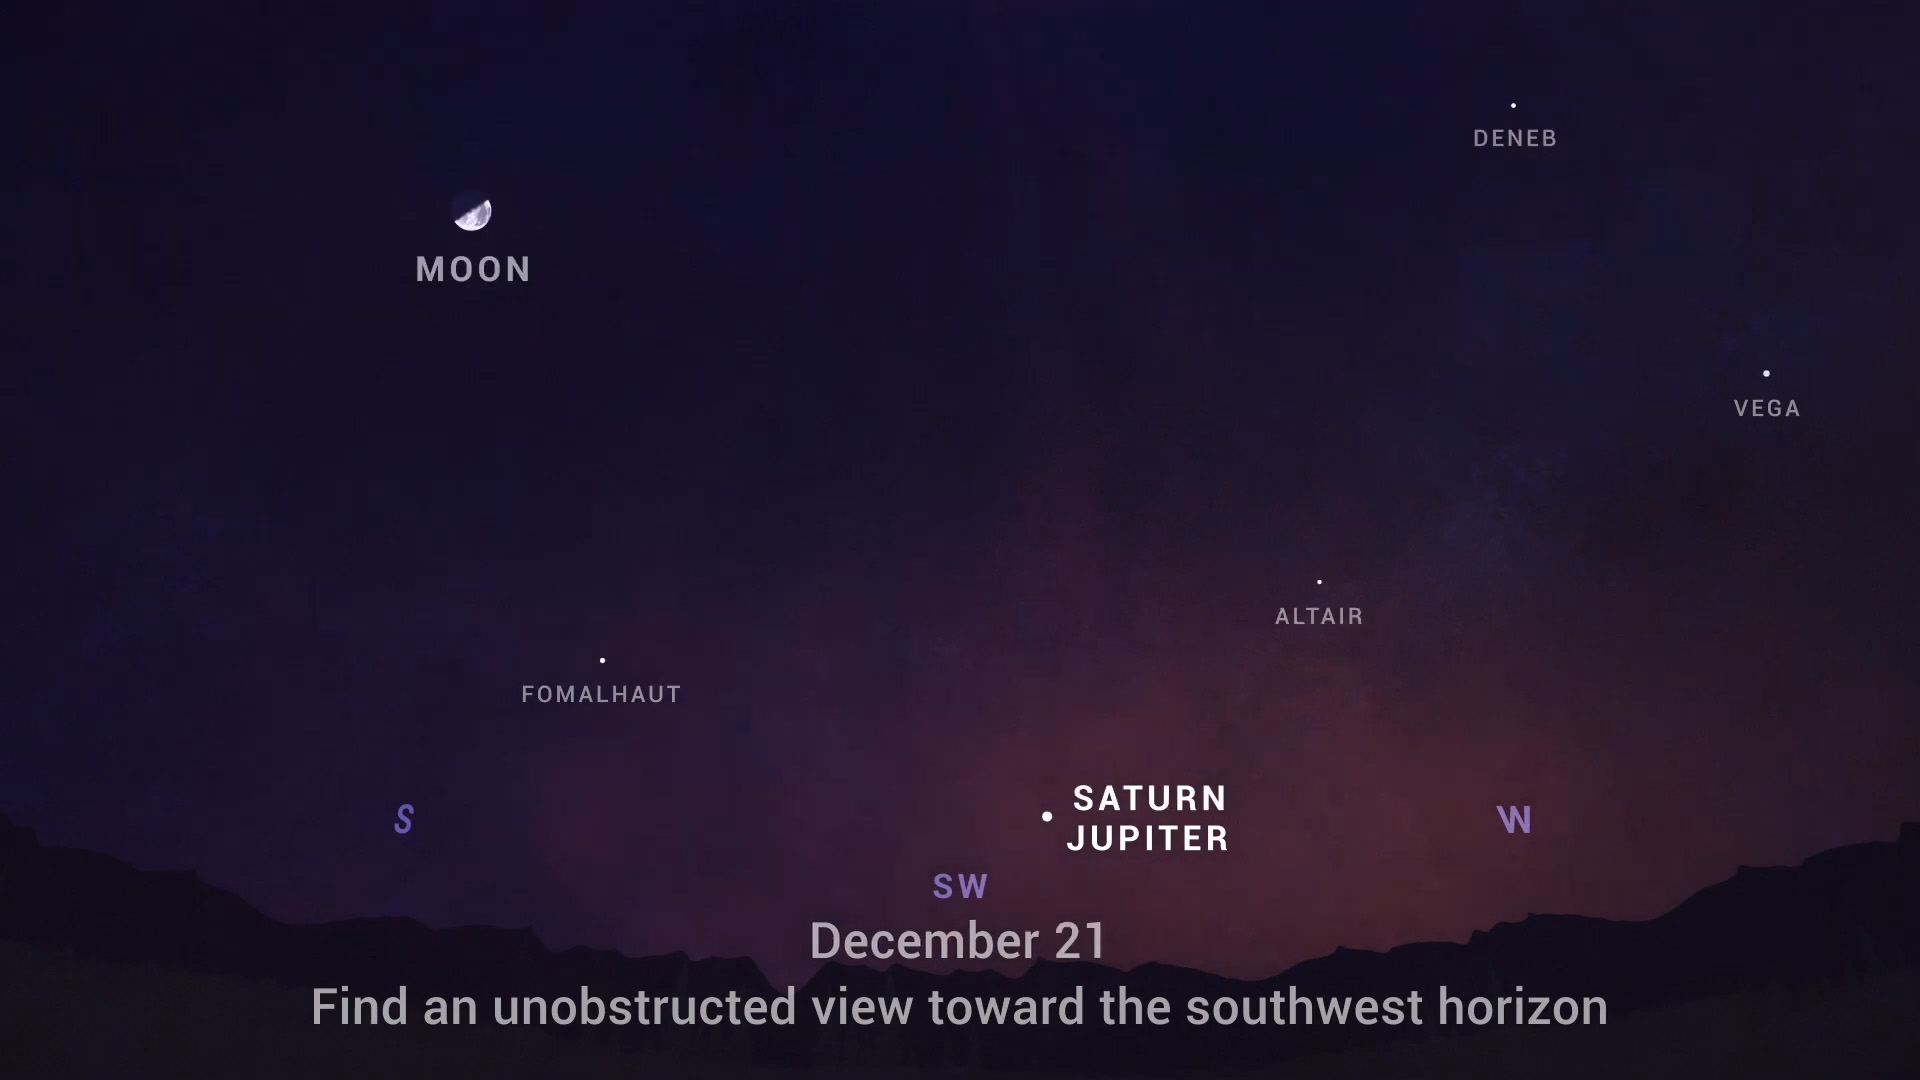 Вказівки від NASA, як побачити явище. Зокрема, для цього необхідно обрати місце, де ніщо не закриватиме горизонт, наприклад, поле чи парк. Через годину після заходу Сонця у південно-західній частині неба низько над горизонтом з’явиться спершу яскравий Юпітер, а потім тьмяніший Сатурн. NASA, JPL-Caltech / NASA